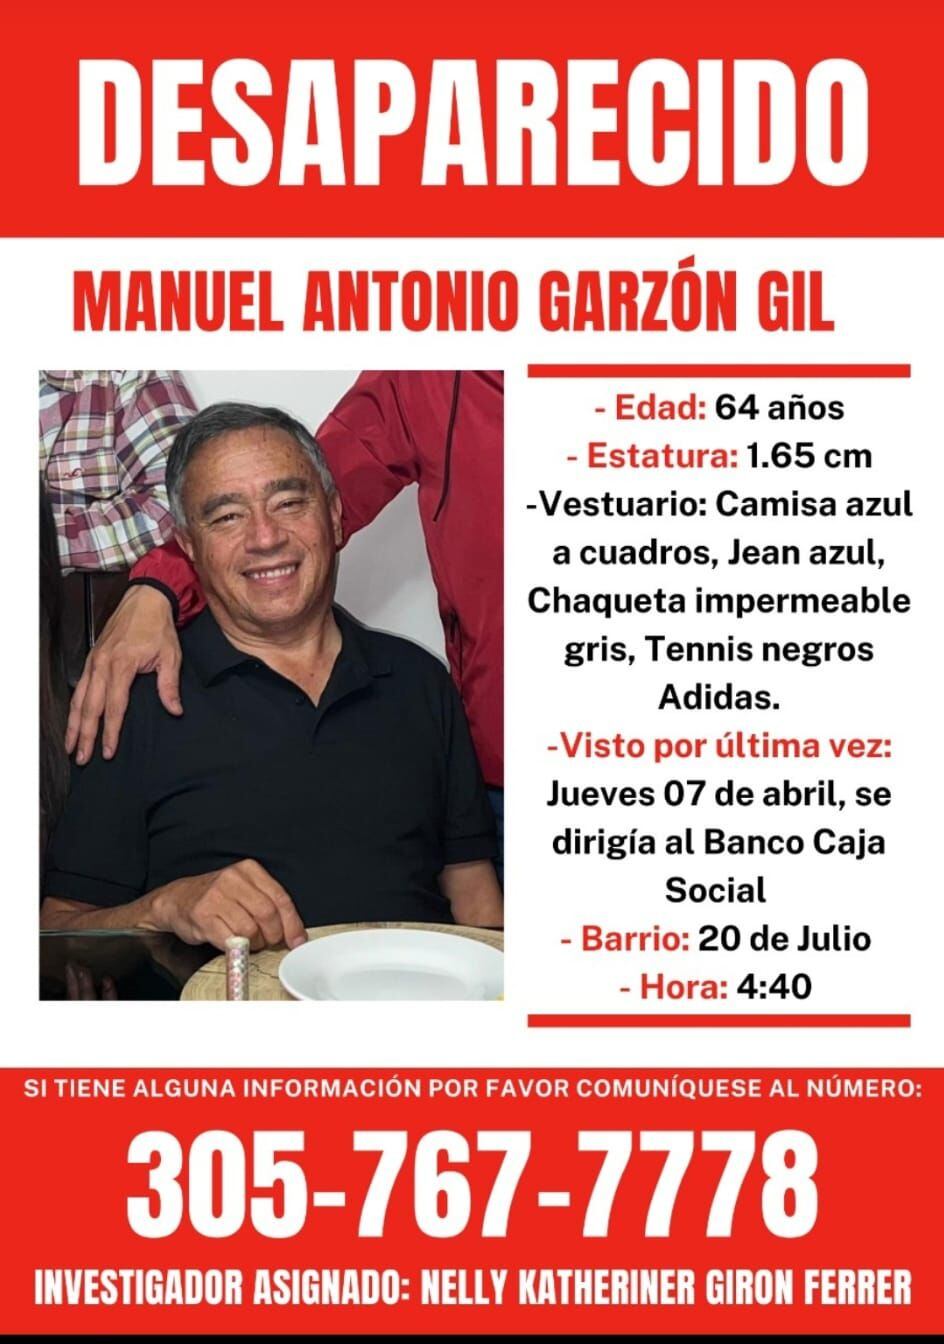 Manuel Antonio Garzón salió de su casa en el sur de Bogotá el pasado jueves y nadie sabe de su paradero.